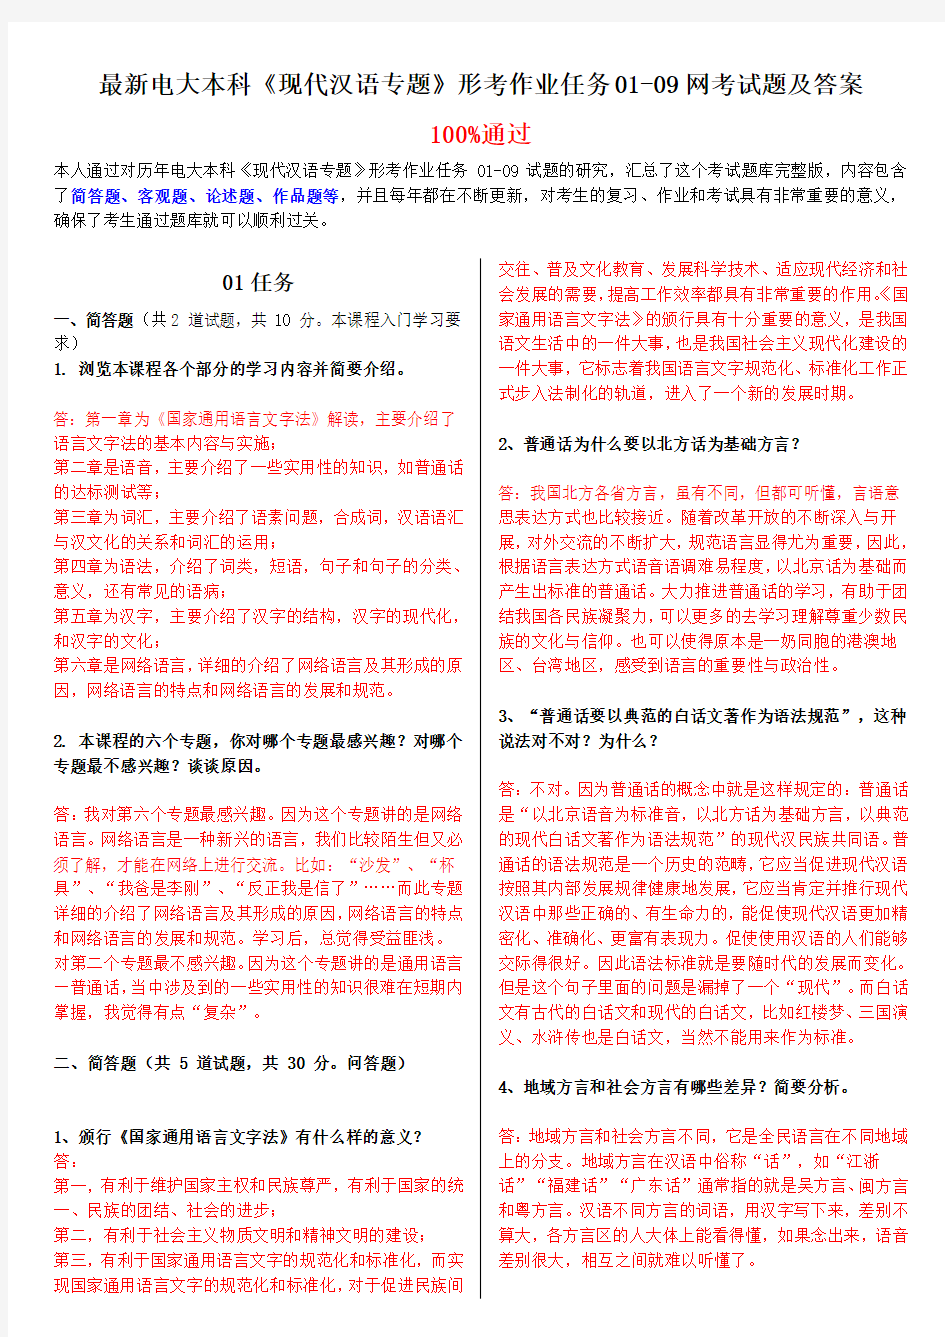 电大本科《现代汉语专题》形考作业任务0109网测验考试题及答案